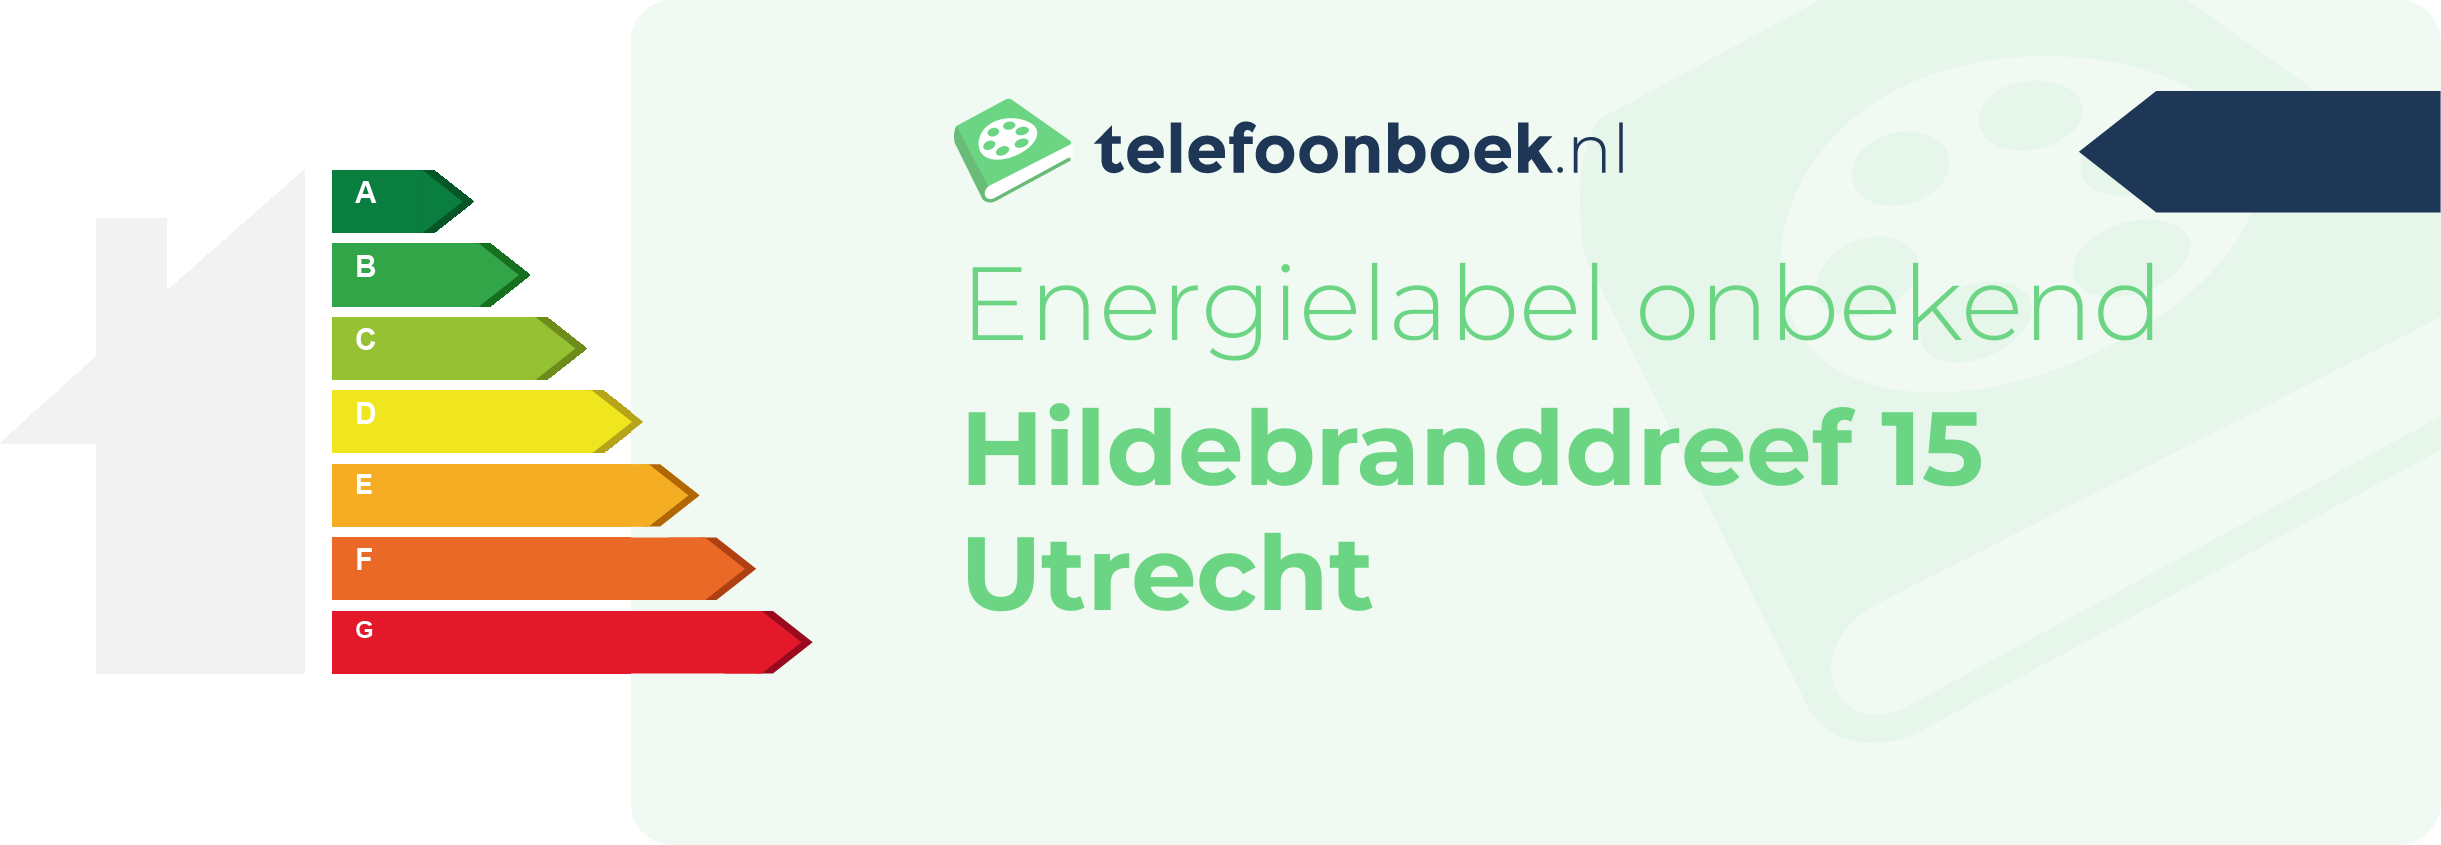 Energielabel Hildebranddreef 15 Utrecht